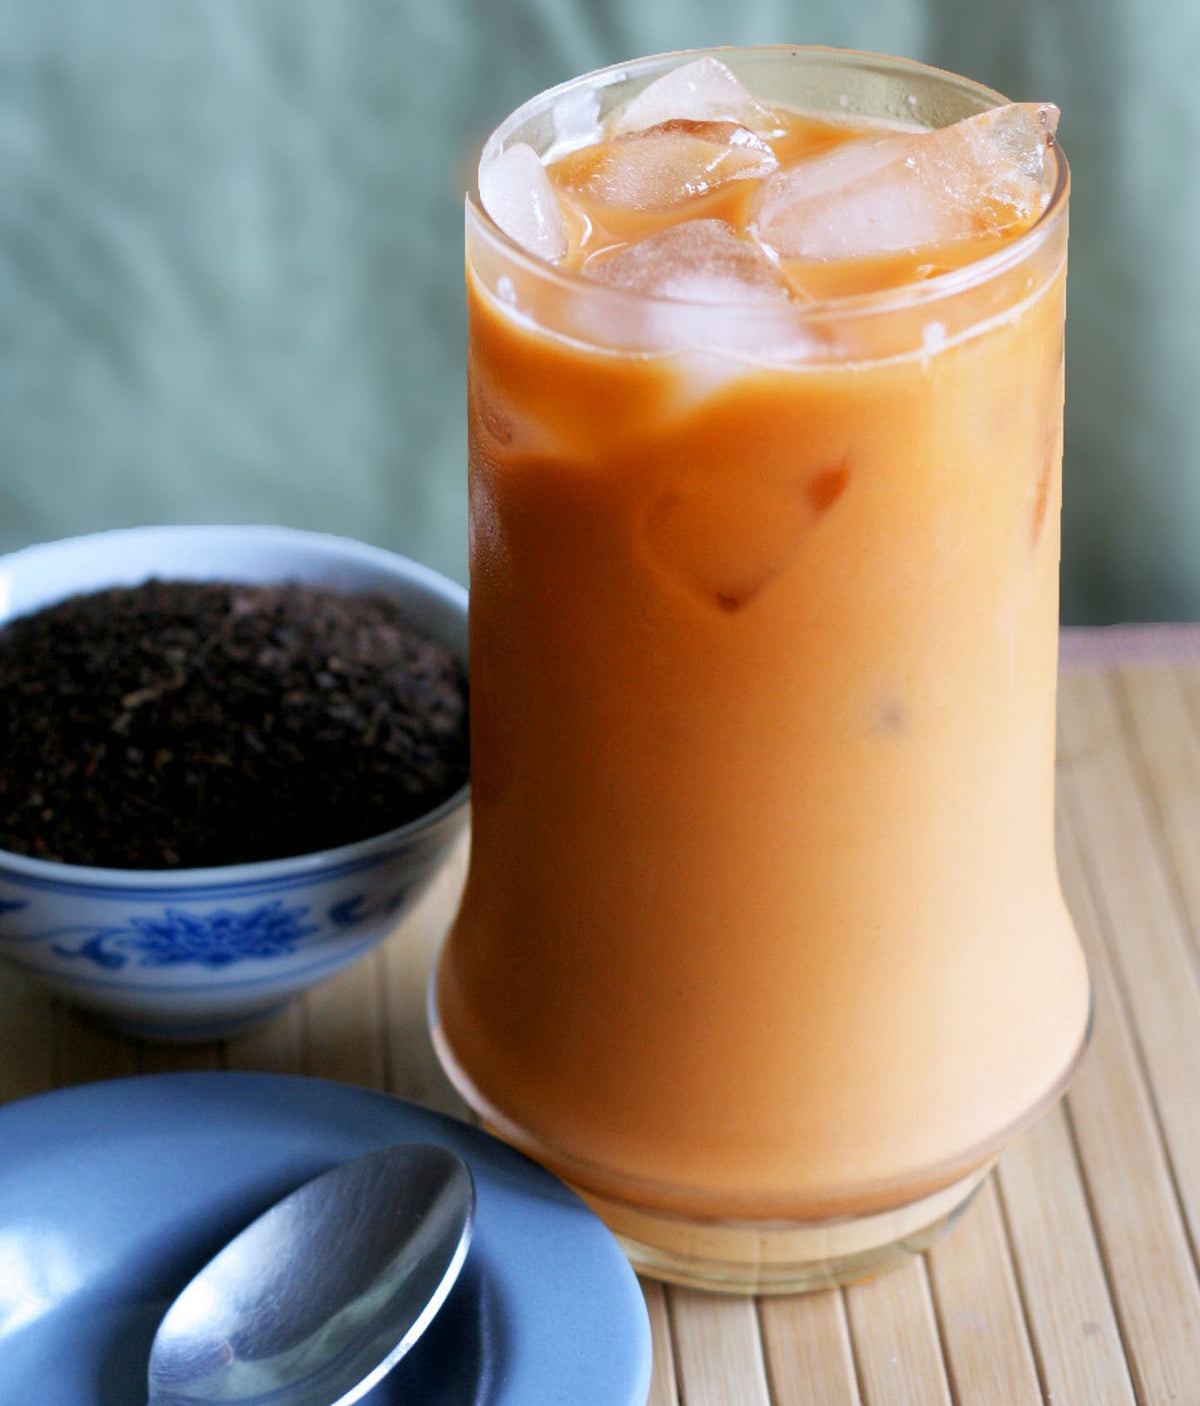 Thai Tea Loose Leaf 4 oz | Cha Thai